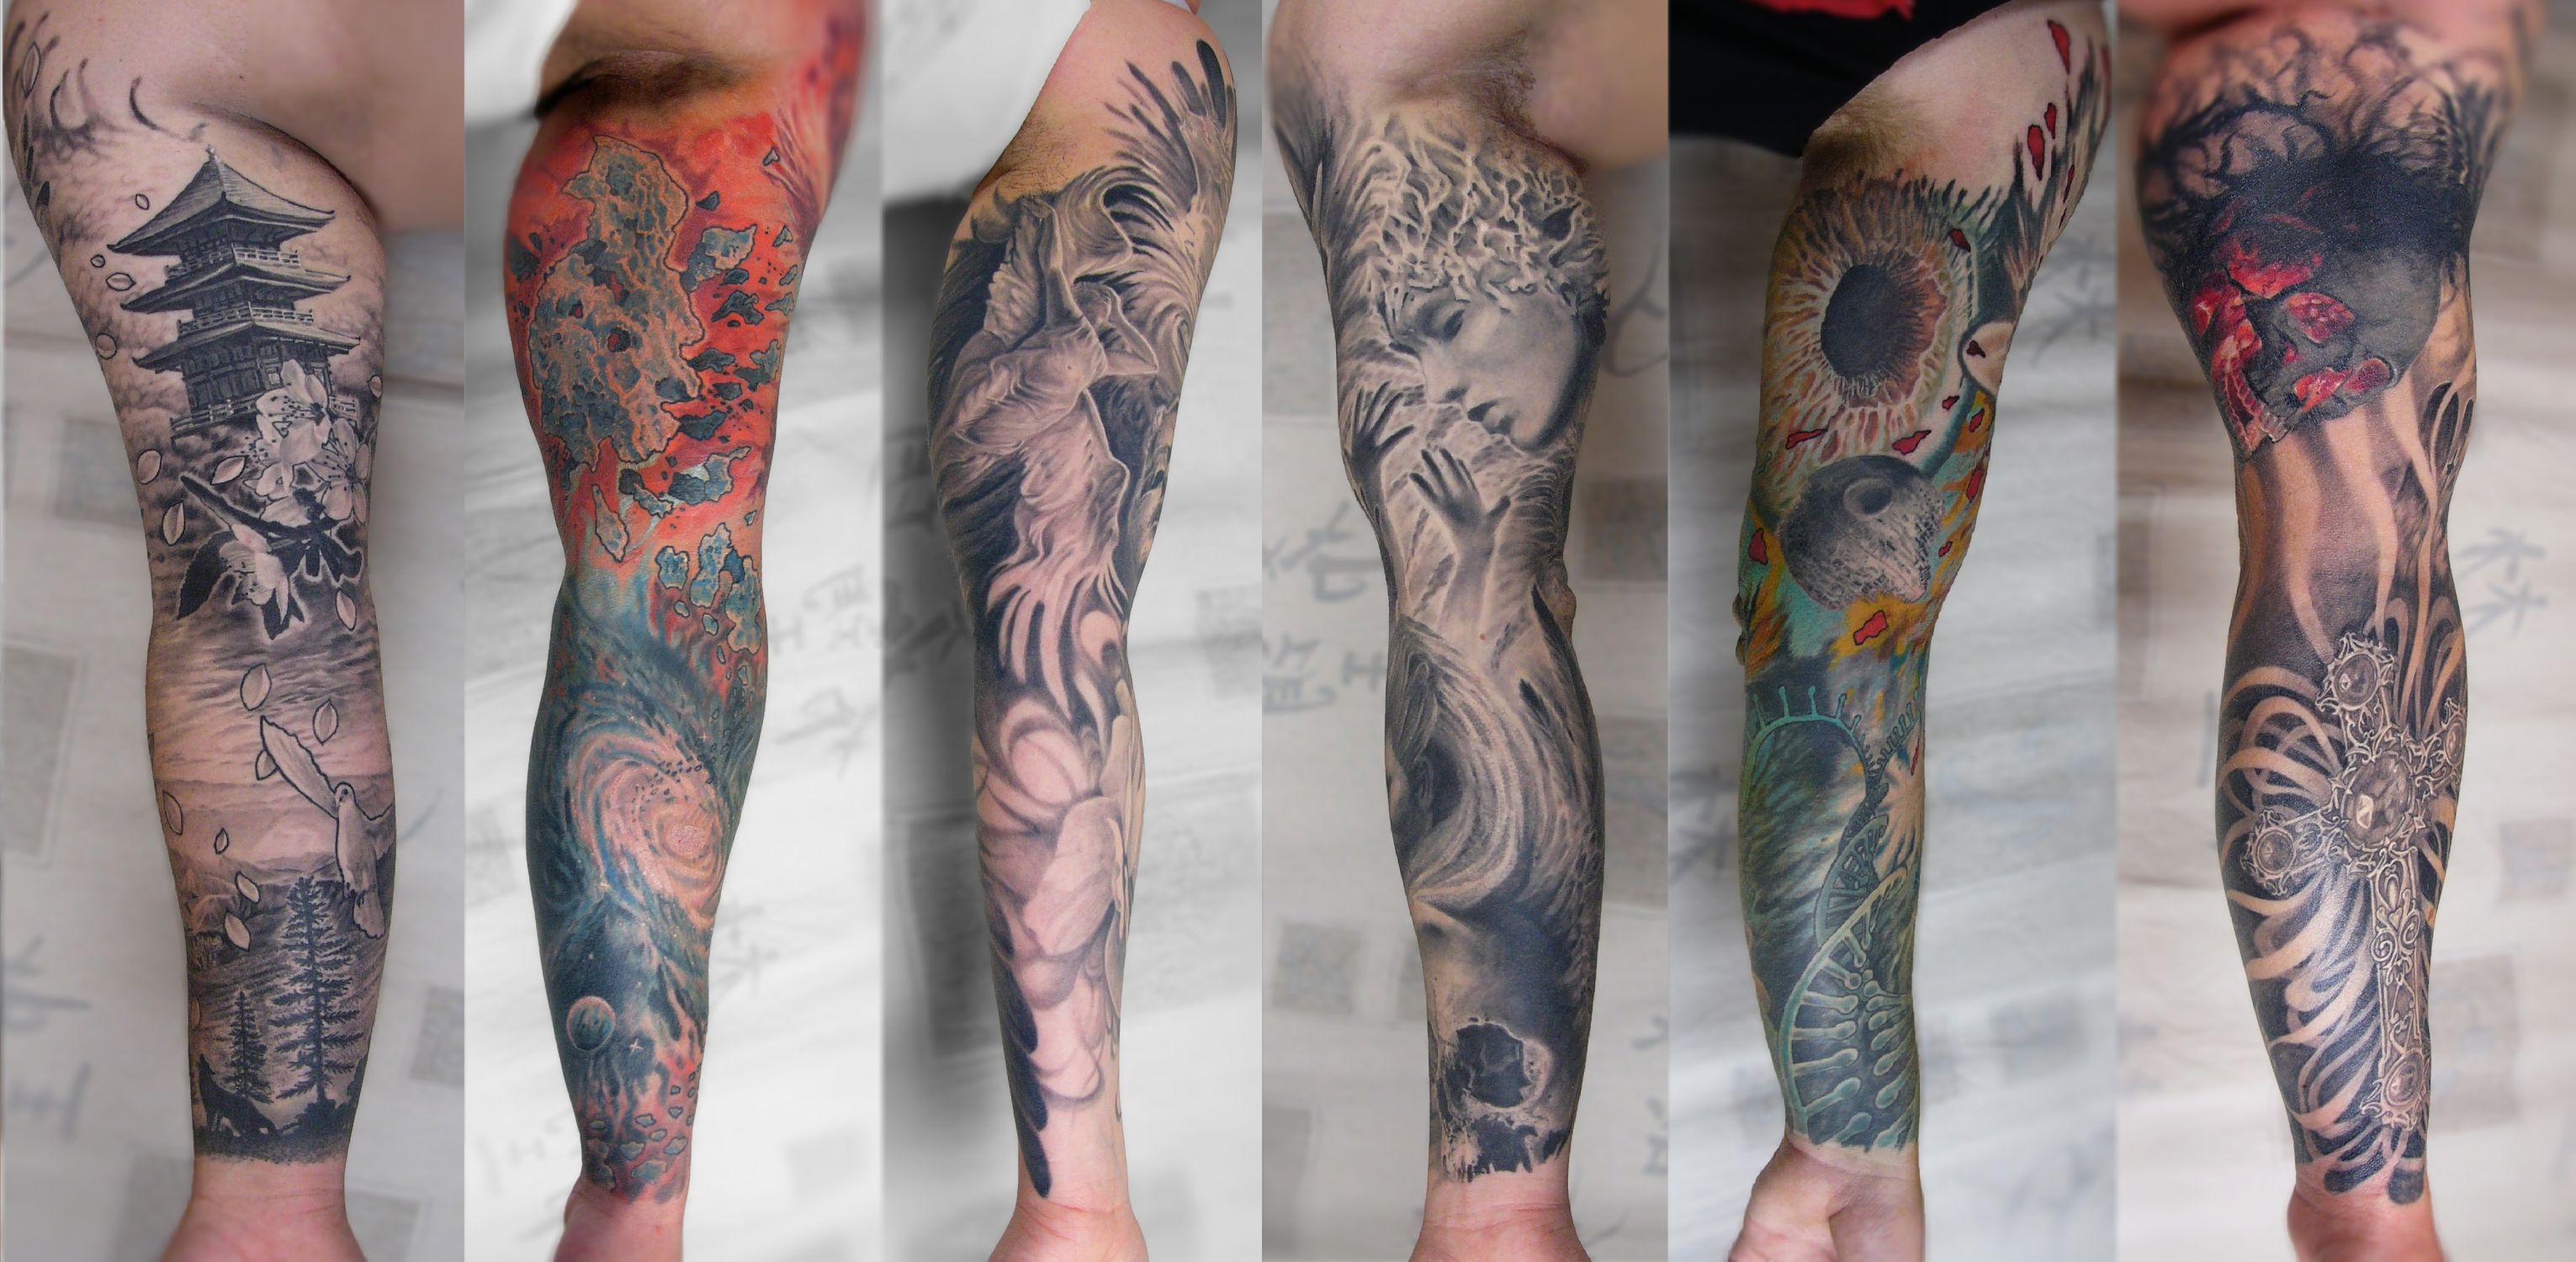 Alkar tetoválás, Állat tetoválás, Angyal tetoválás, Fantázia tetoválás, Fekete fehér tetoválás, Felkar tetoválás, Felújított tetoválások, Kereszt tetoválás, Koponya tetoválás, Orientális tetoválás, Portré tetoválás, Realisztikus tetoválás, Színes tetoválás, Teljes kar tetoválás, Űr tetoválás